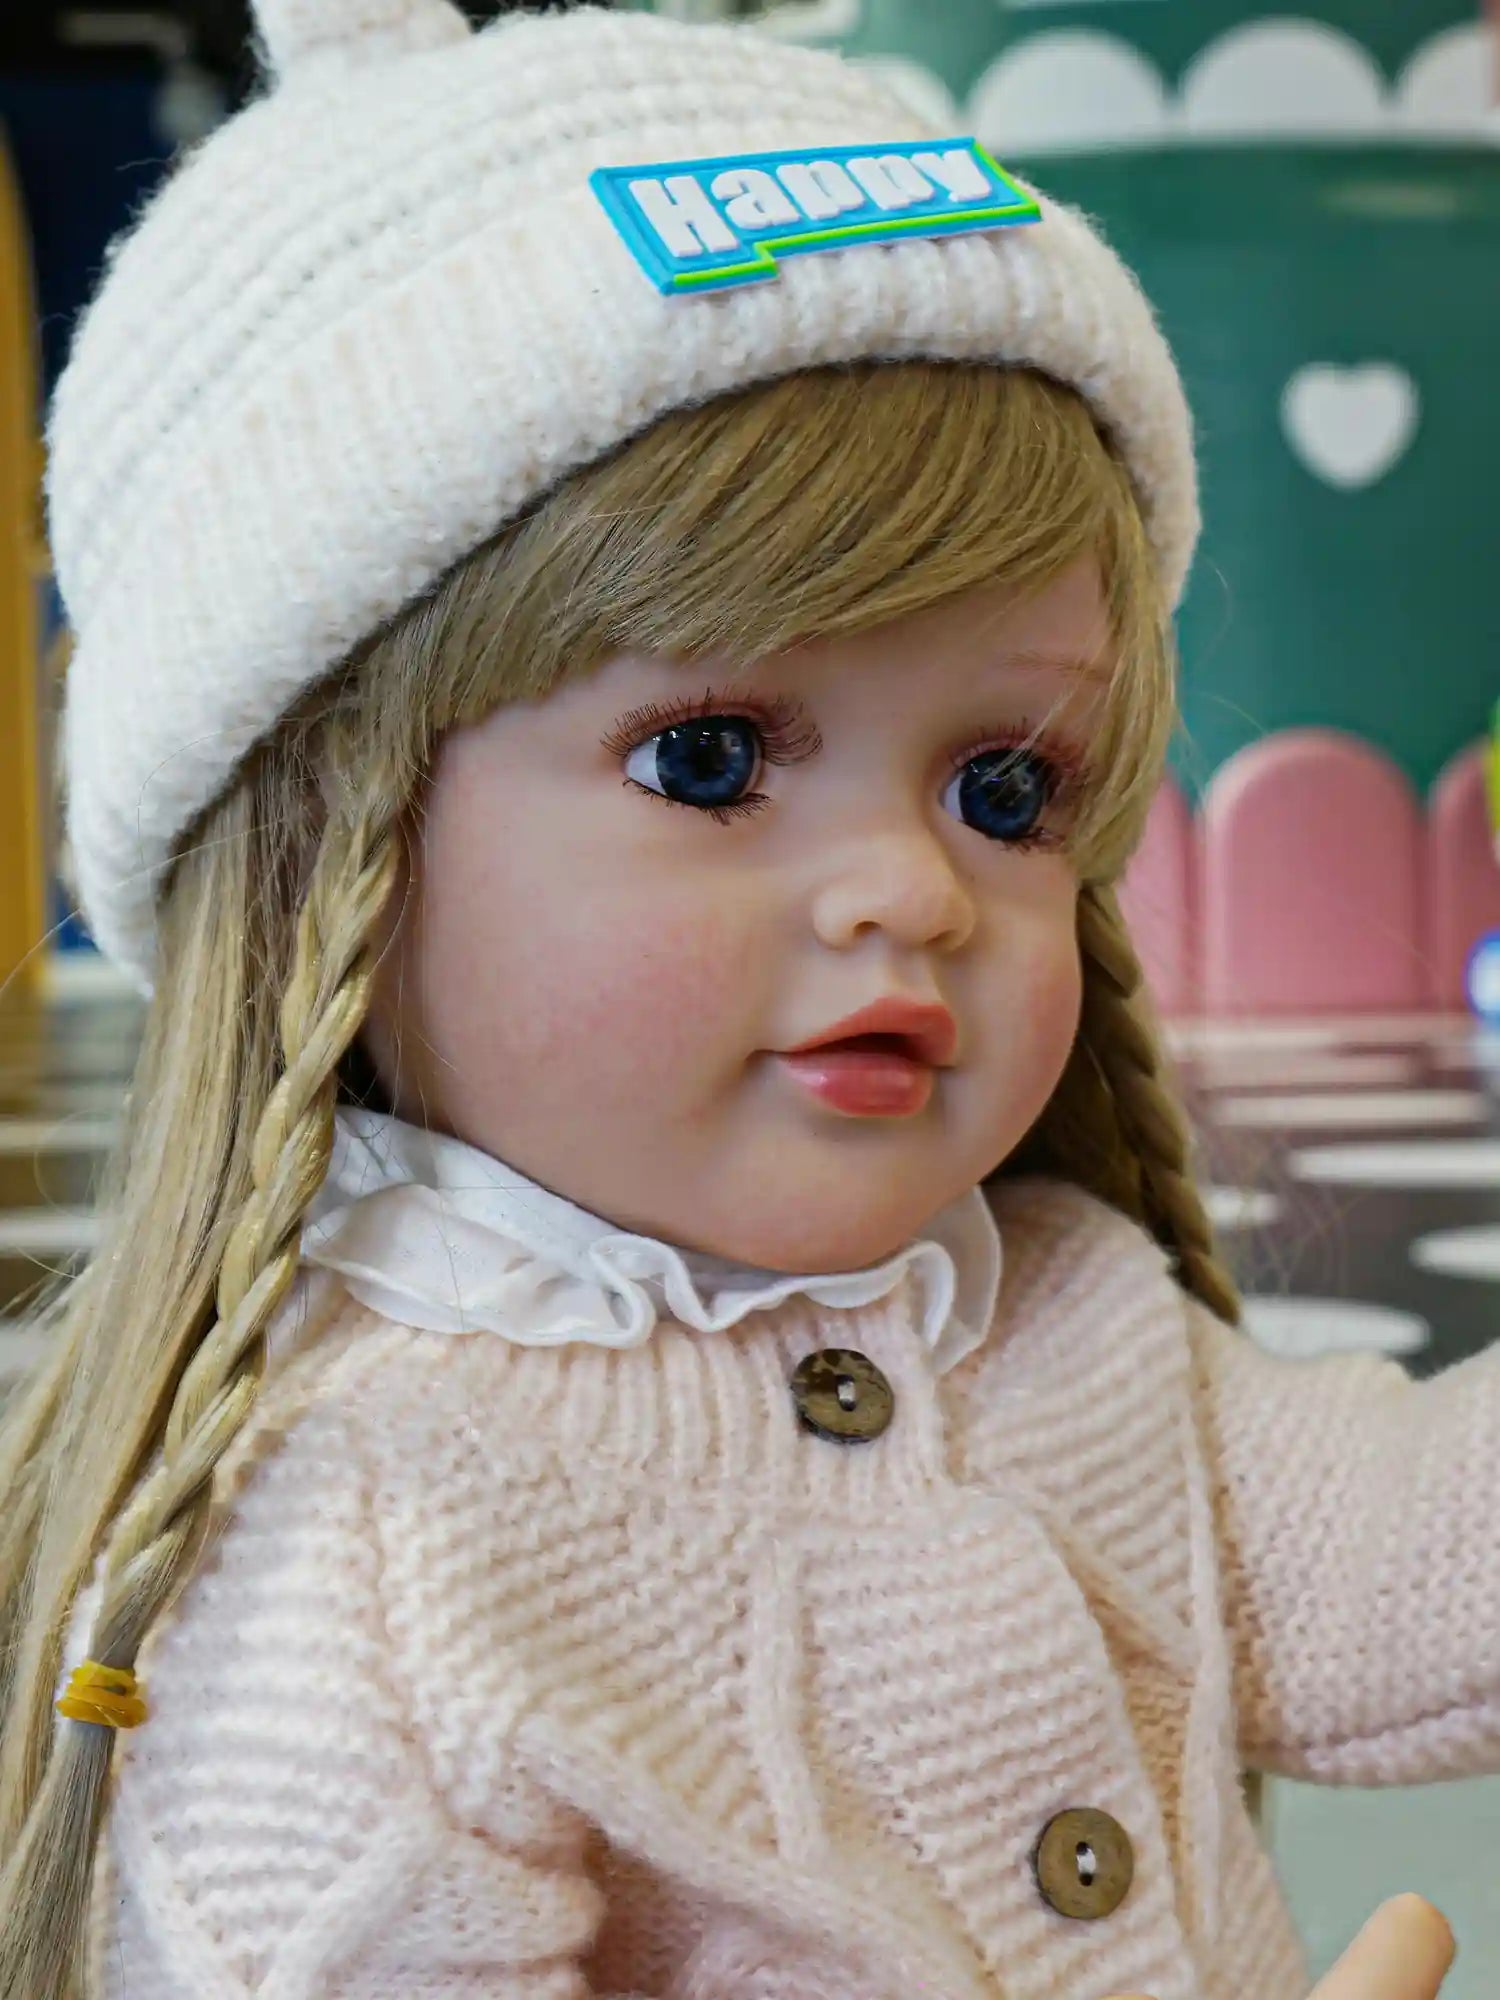 Chimidoll - Niedliche Kleinkind-Puppe mit langen gelben Haaren, blauen Augen und einem beigen Outfit